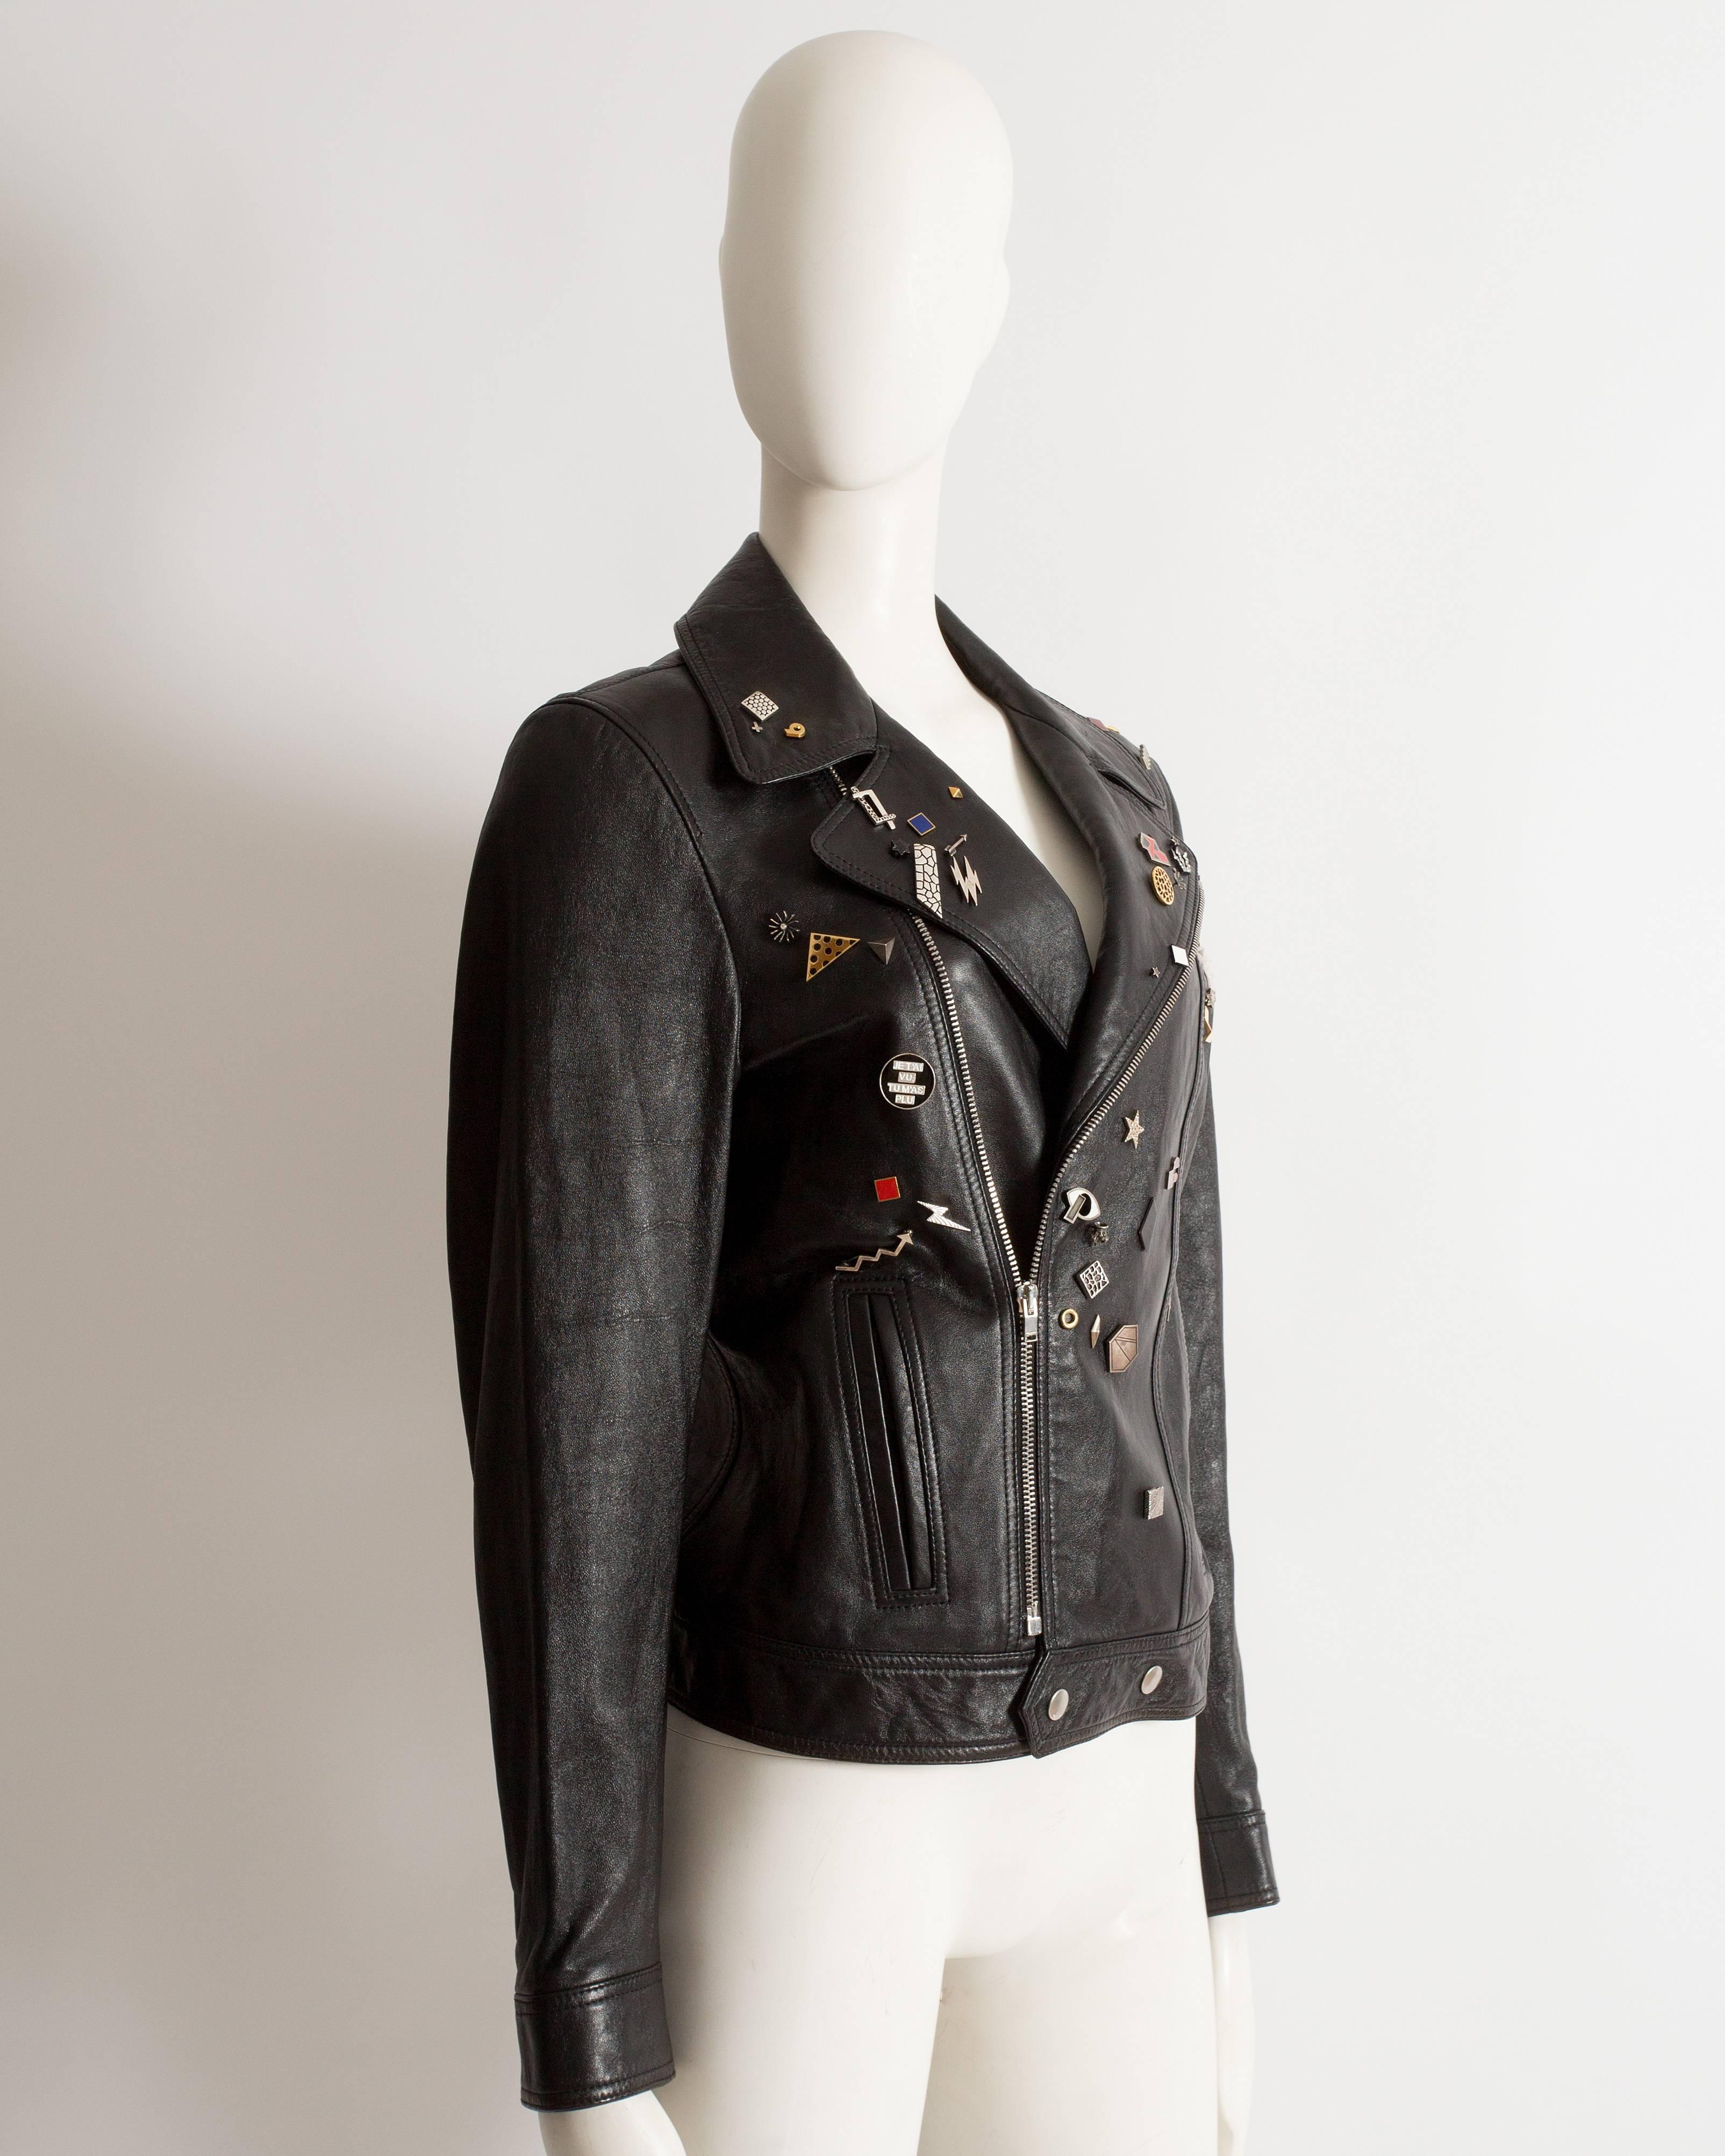 Black Saint Laurent by Hedi Slimane black leather biker jacket with badges , AW 2015